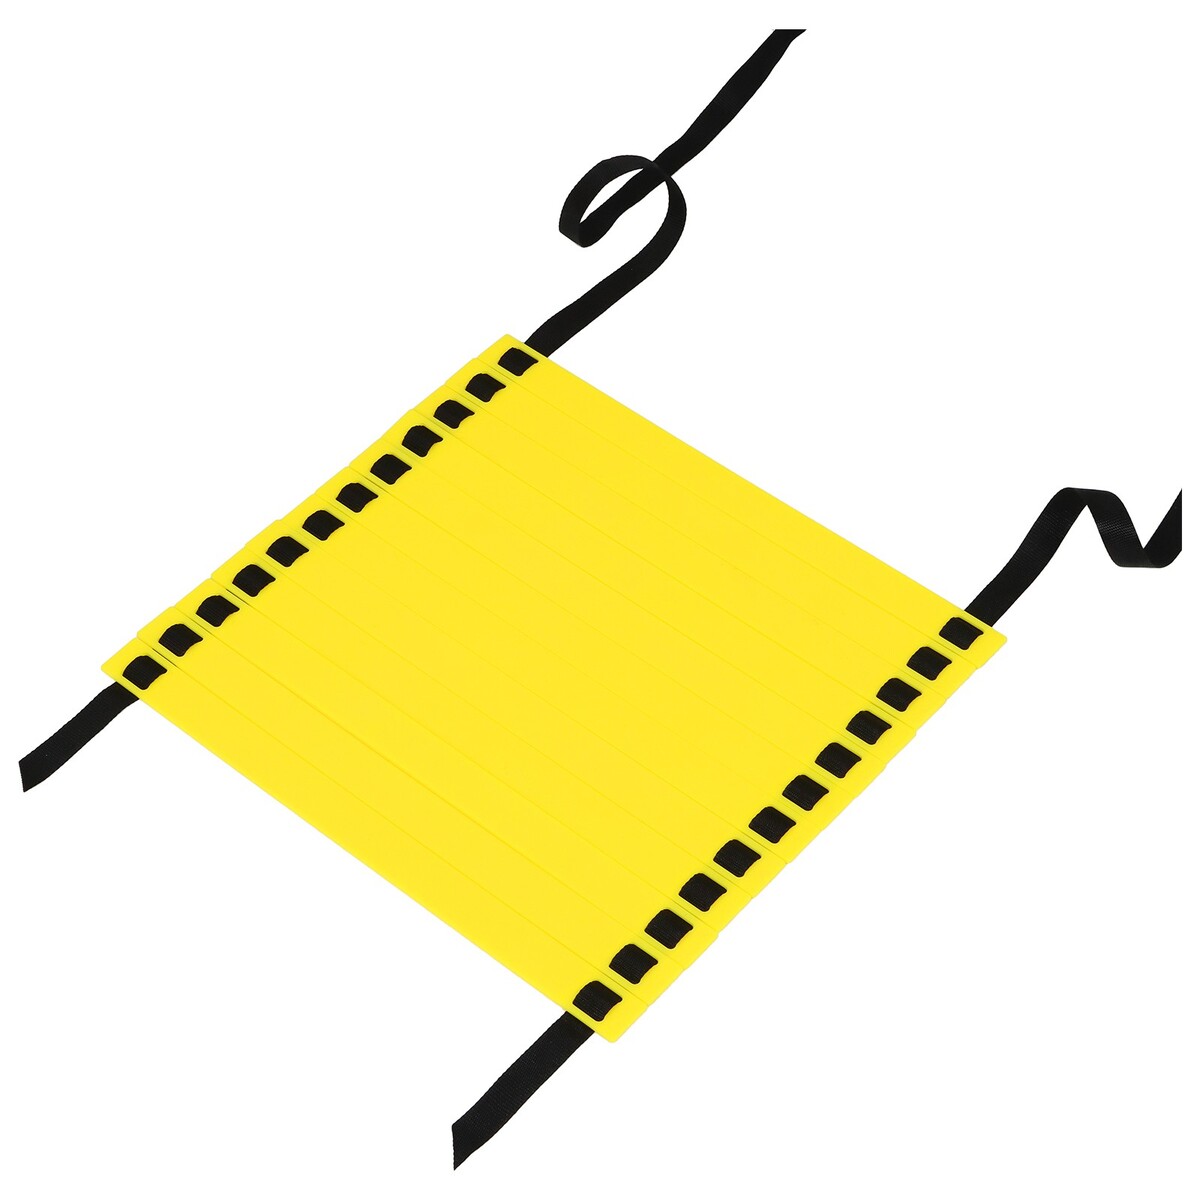 Координационная лестница onlytop, 6 м, толщина 4 мм, цвет желтый лестница координационная sportex 8 метров b31308 3 желтая в чехле